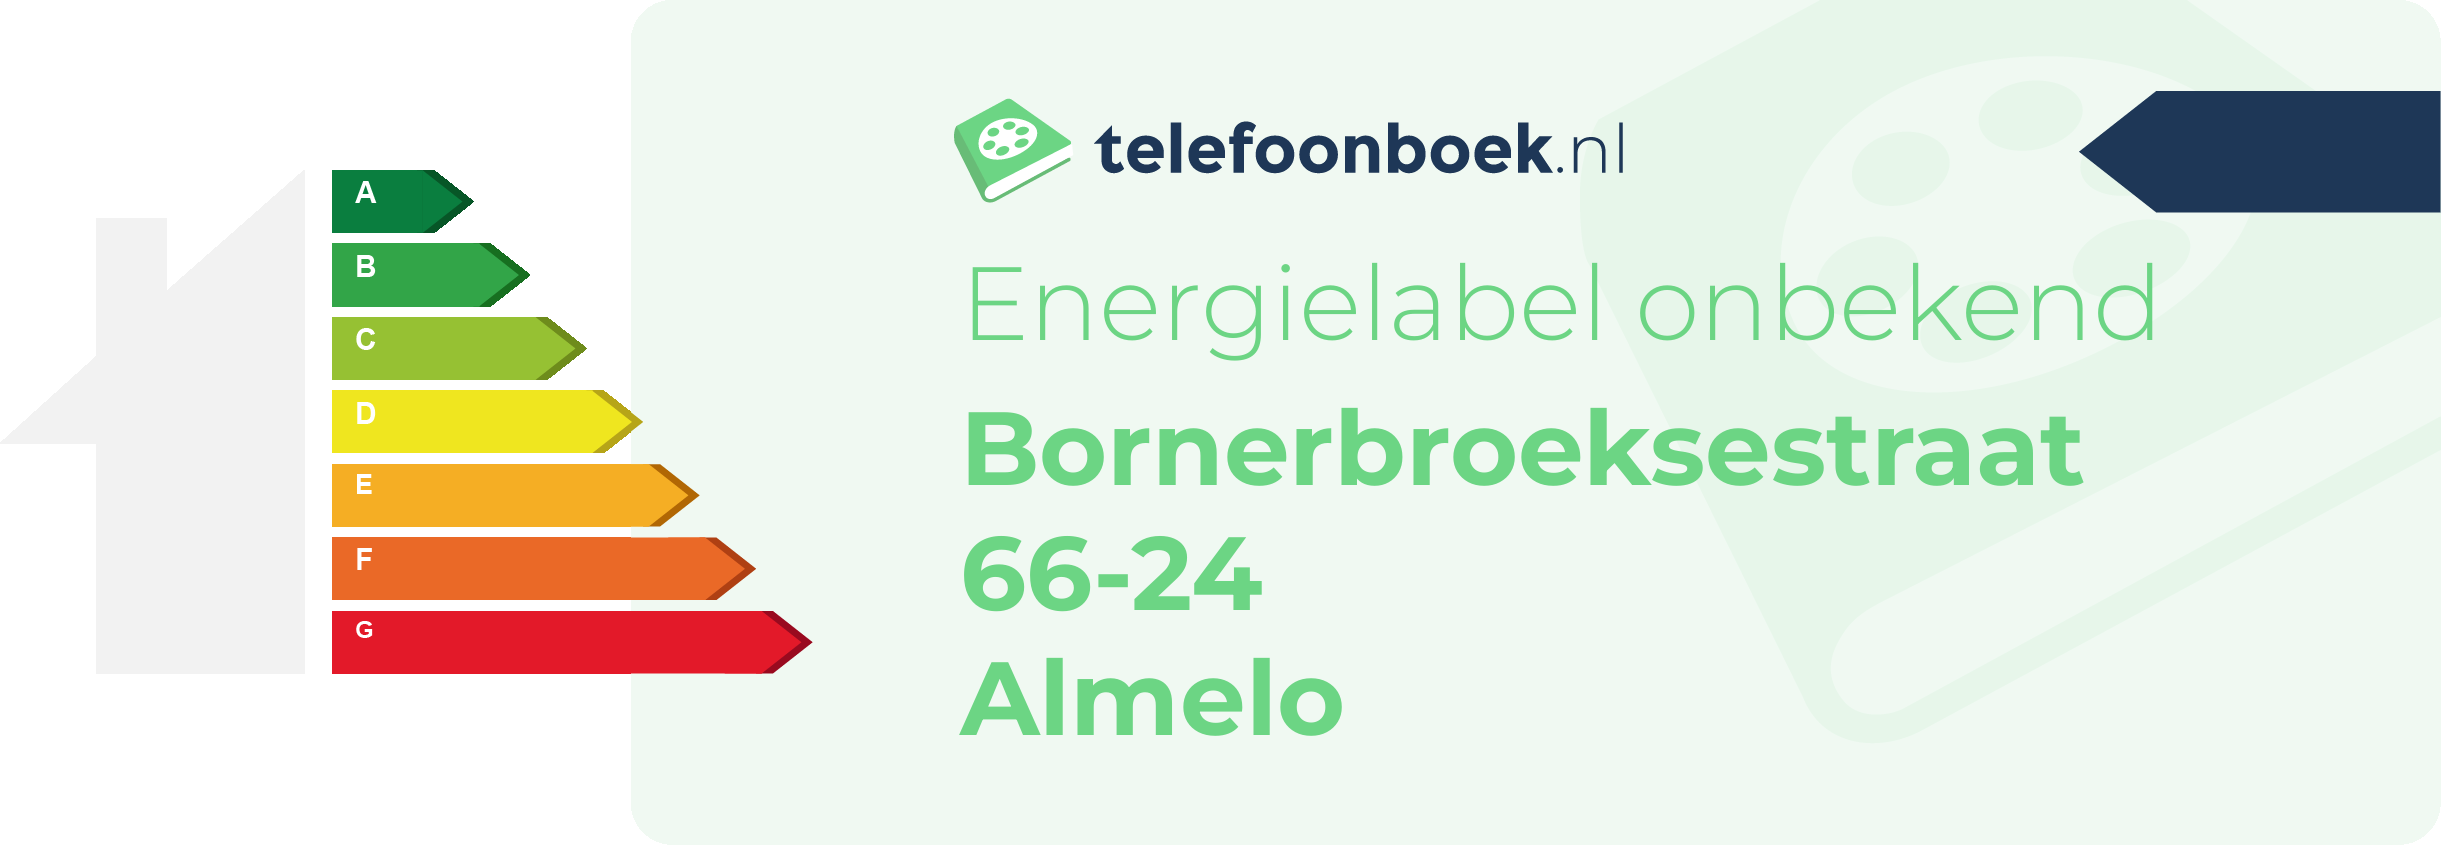 Energielabel Bornerbroeksestraat 66-24 Almelo